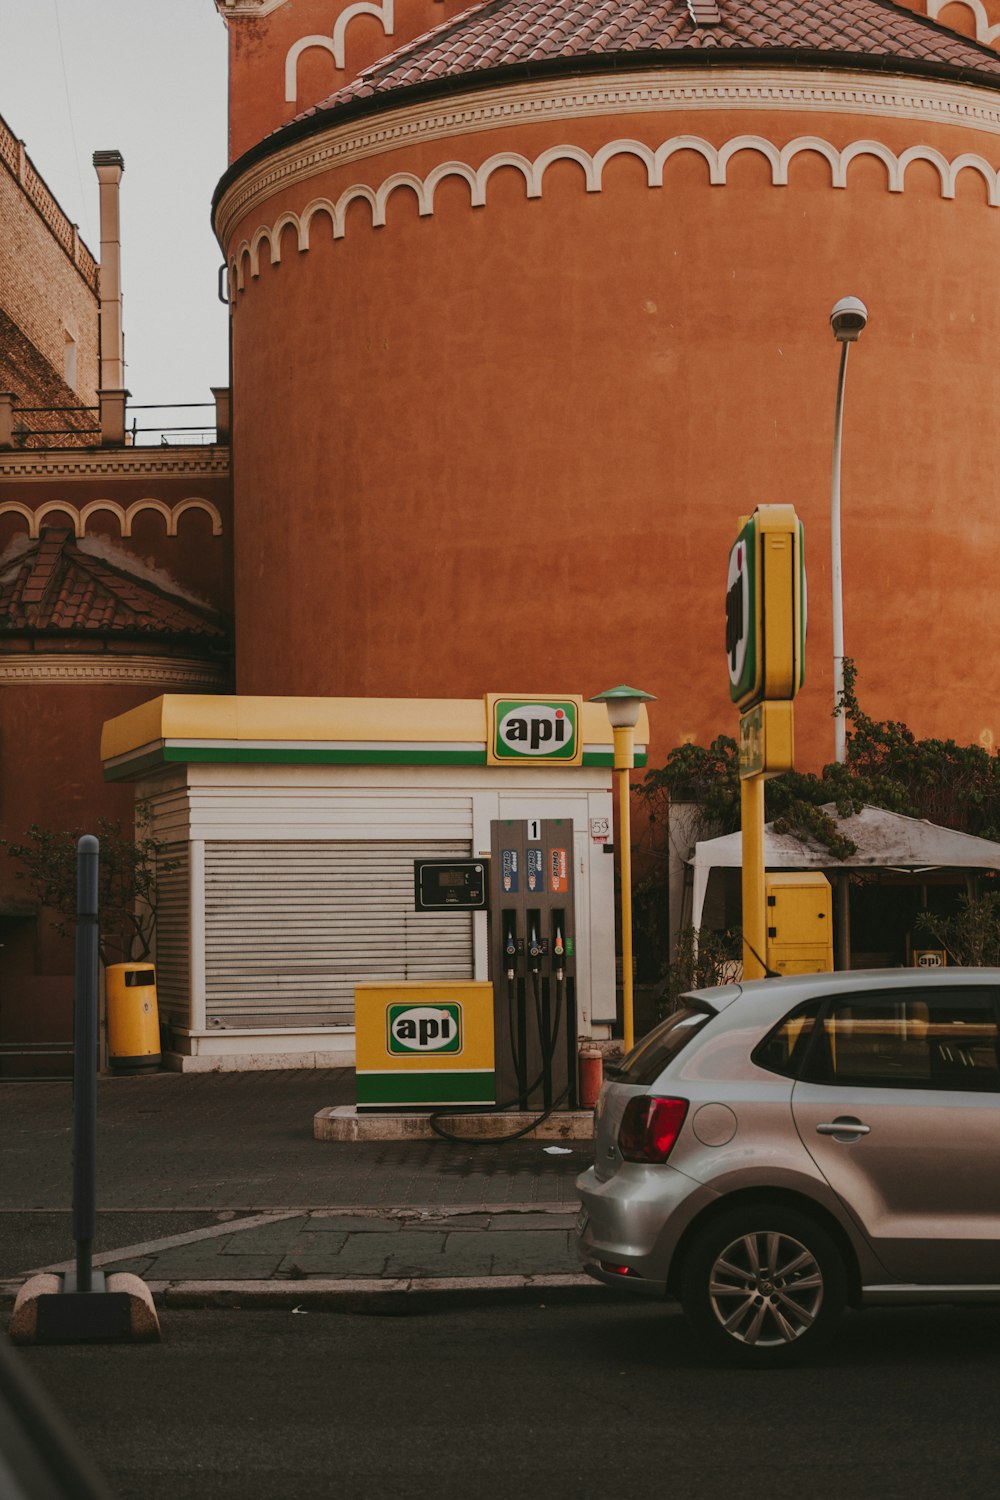 Un coche aparcado frente a una gasolinera